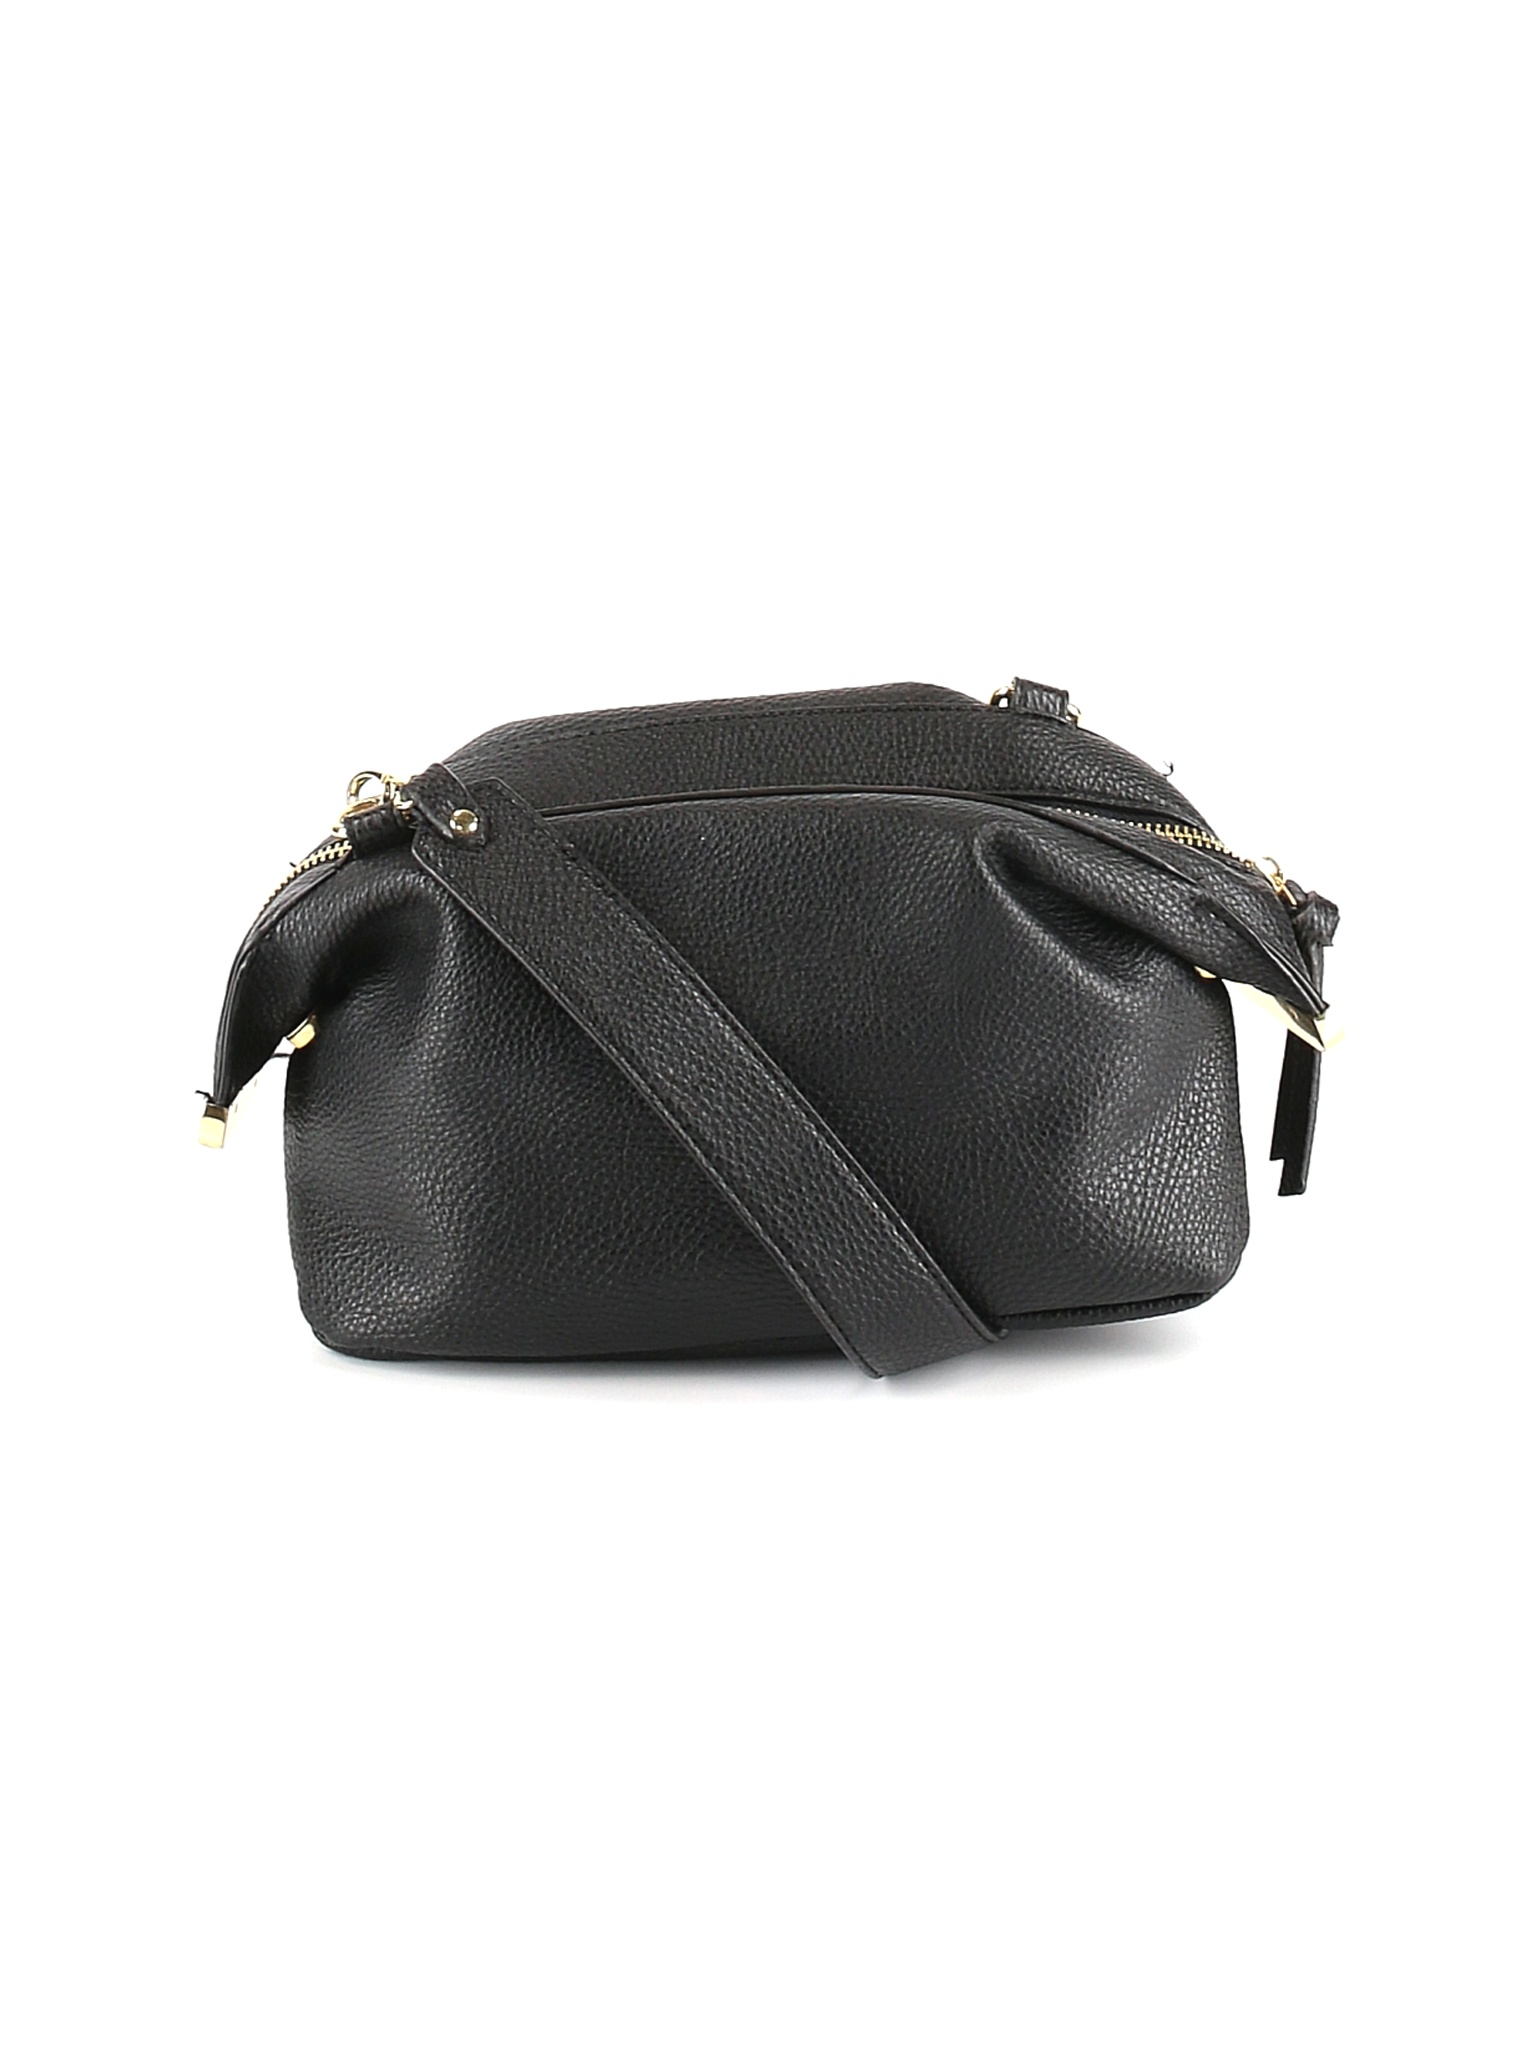 Steve Madden Women Black Crossbody Bag One Size | eBay